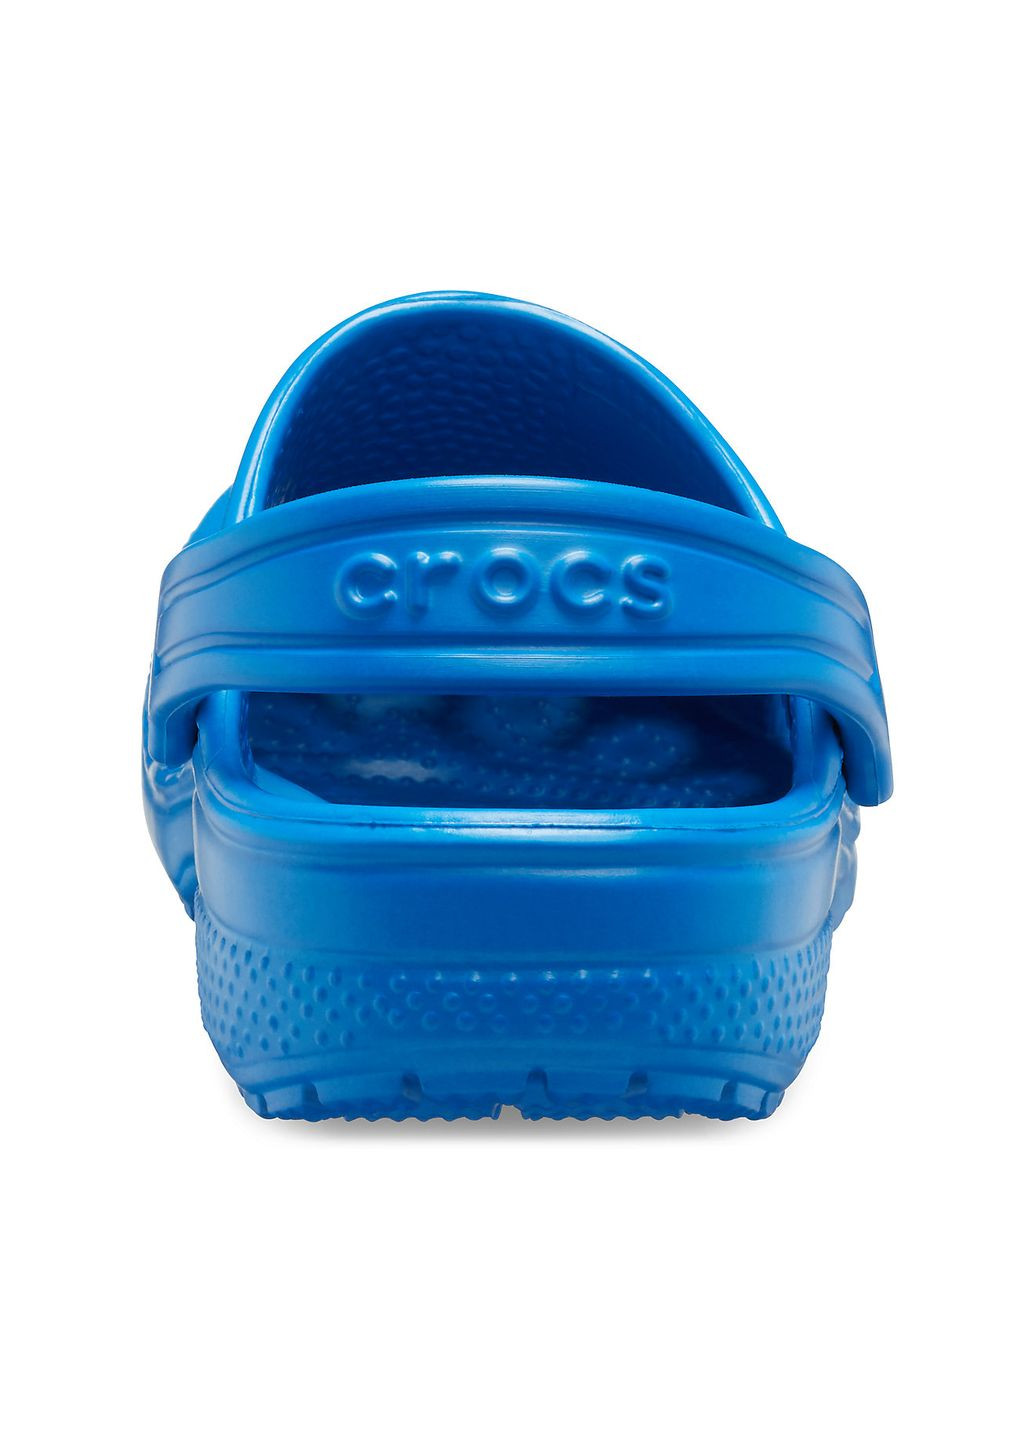 Синие сабо kids classic clog blue bolt c12\29\18.5 см 206991 Crocs